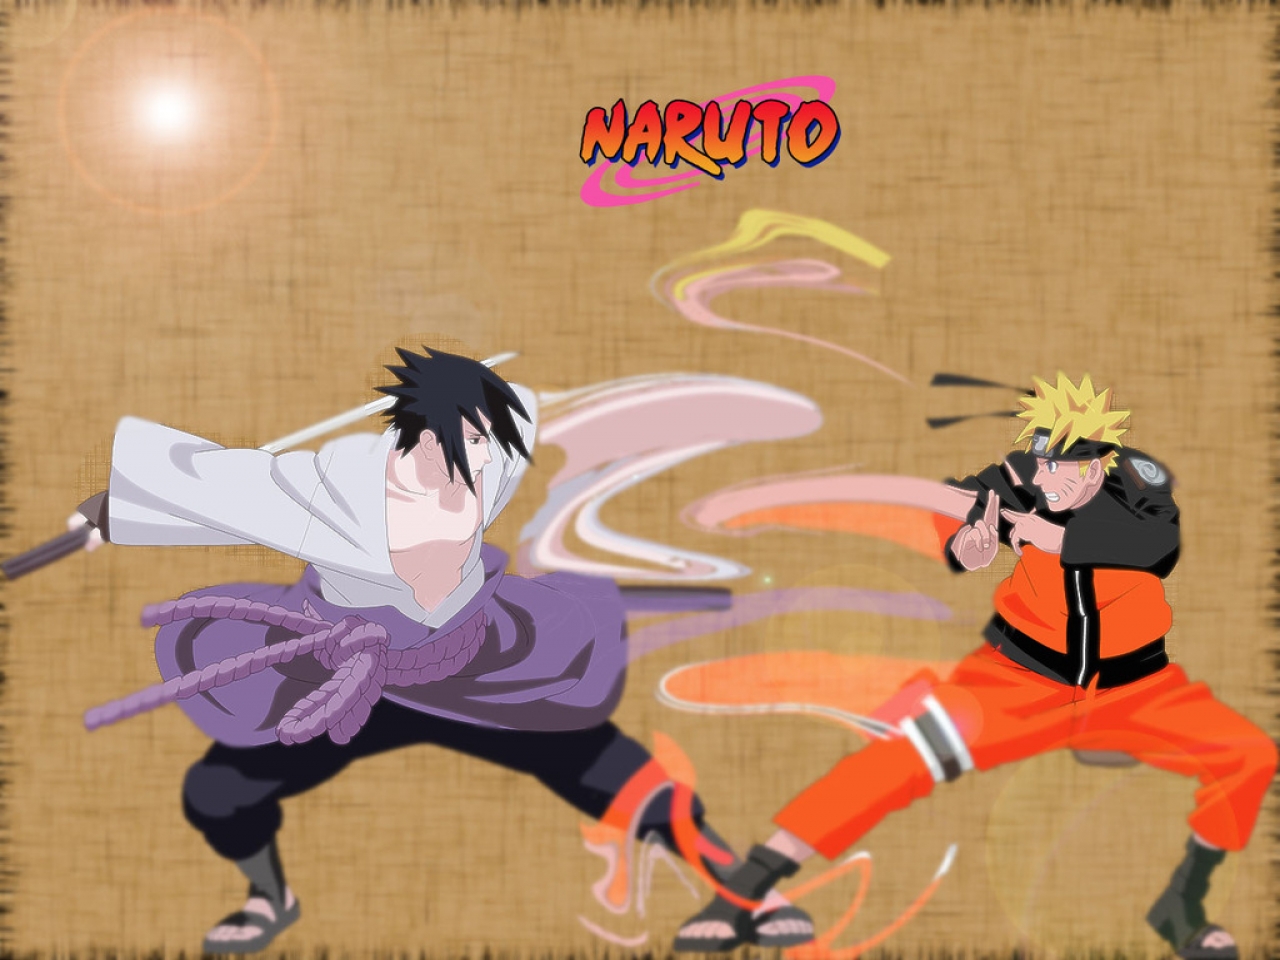 WallpapersKu Naruto vs Sasuke Wallpapers